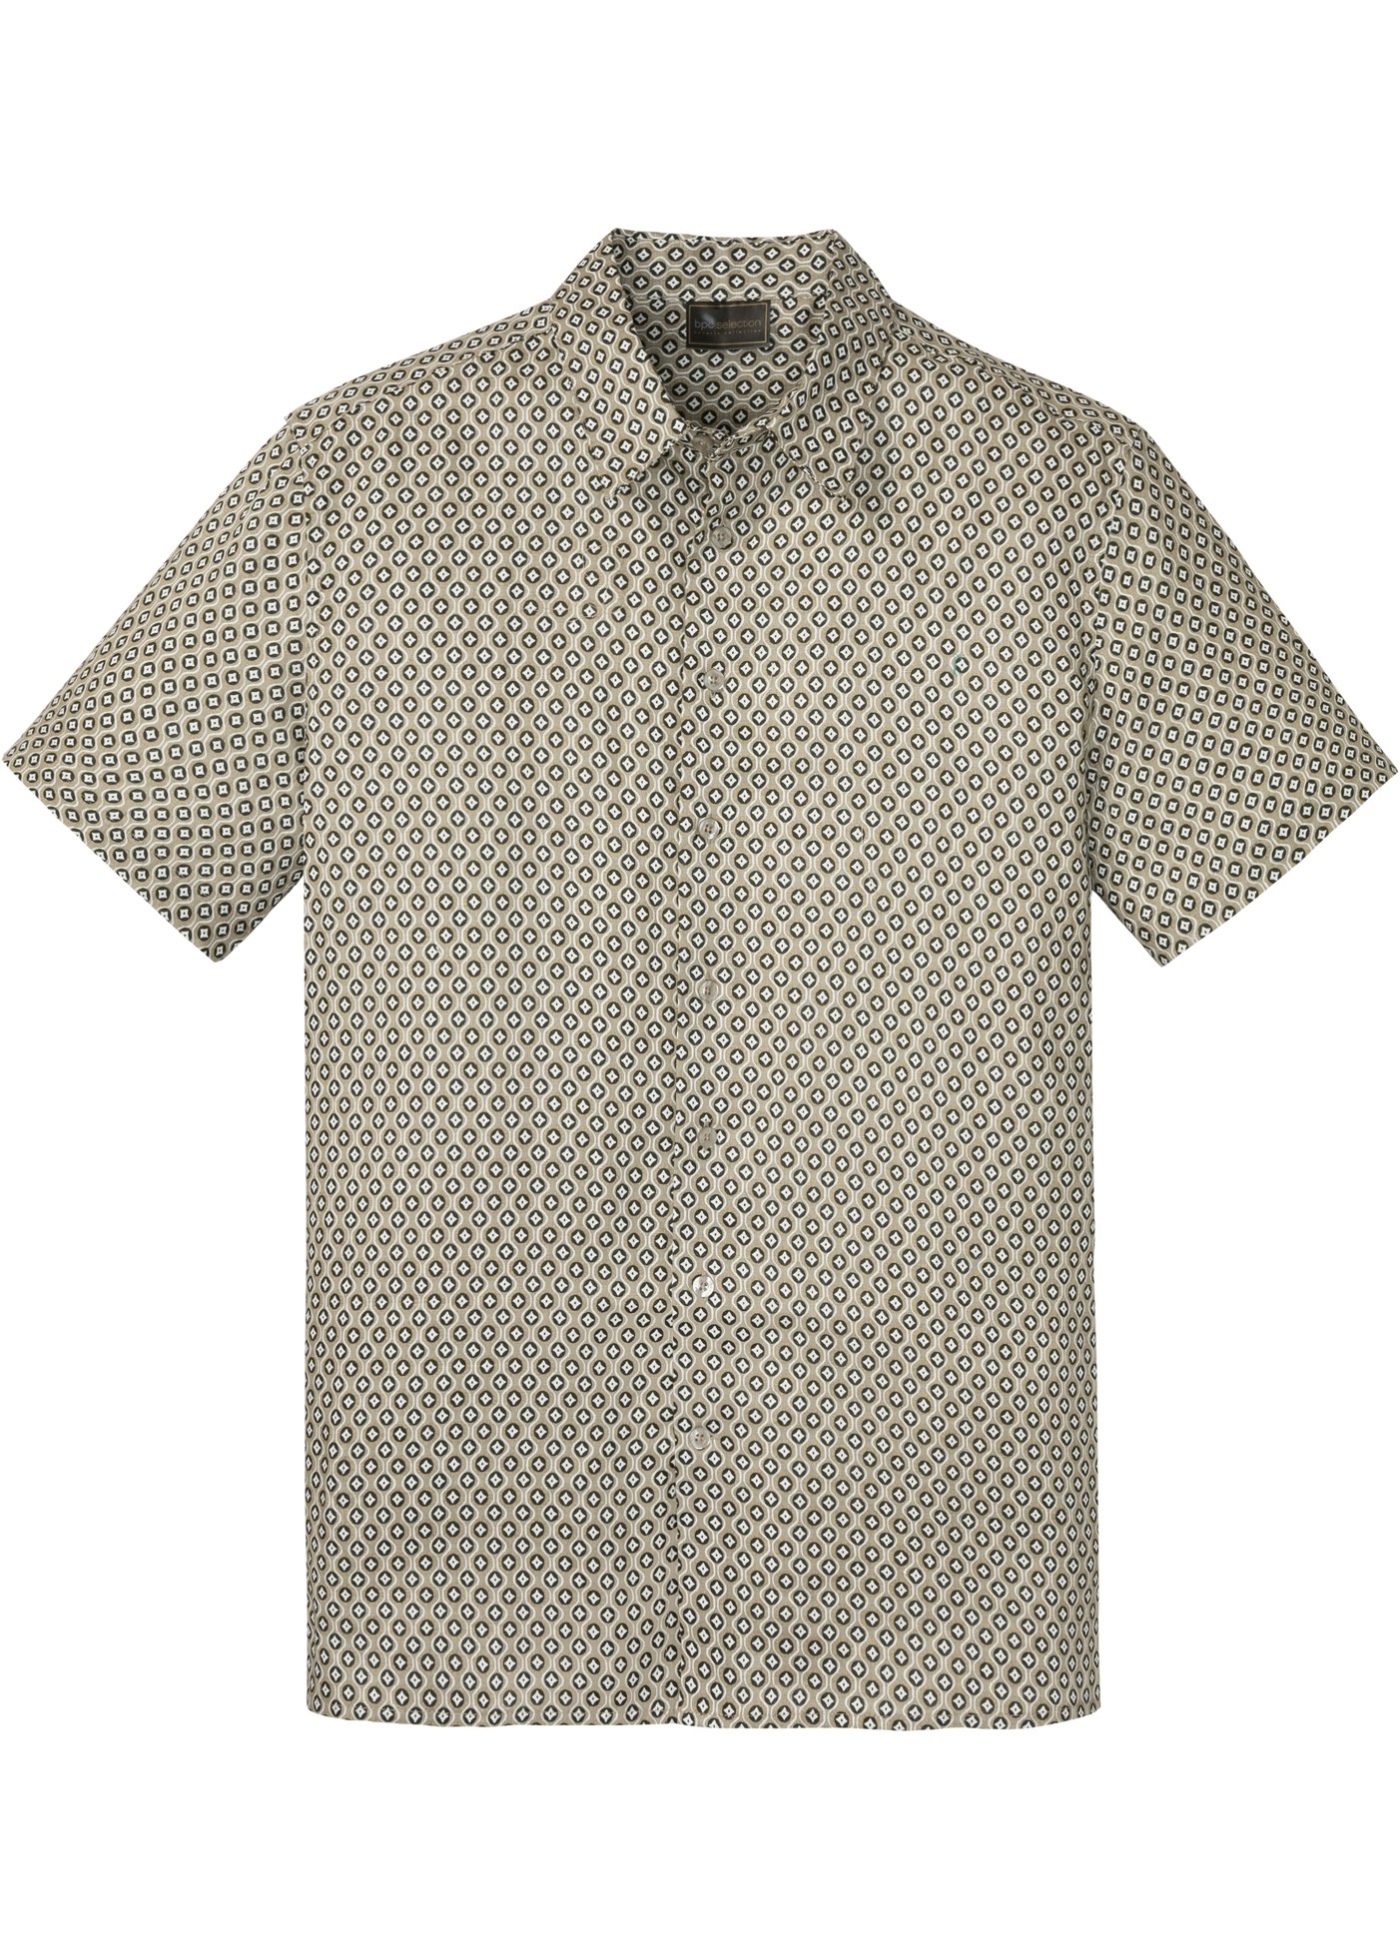 Leinen - Kurzarmhemd mit Minimaldruck